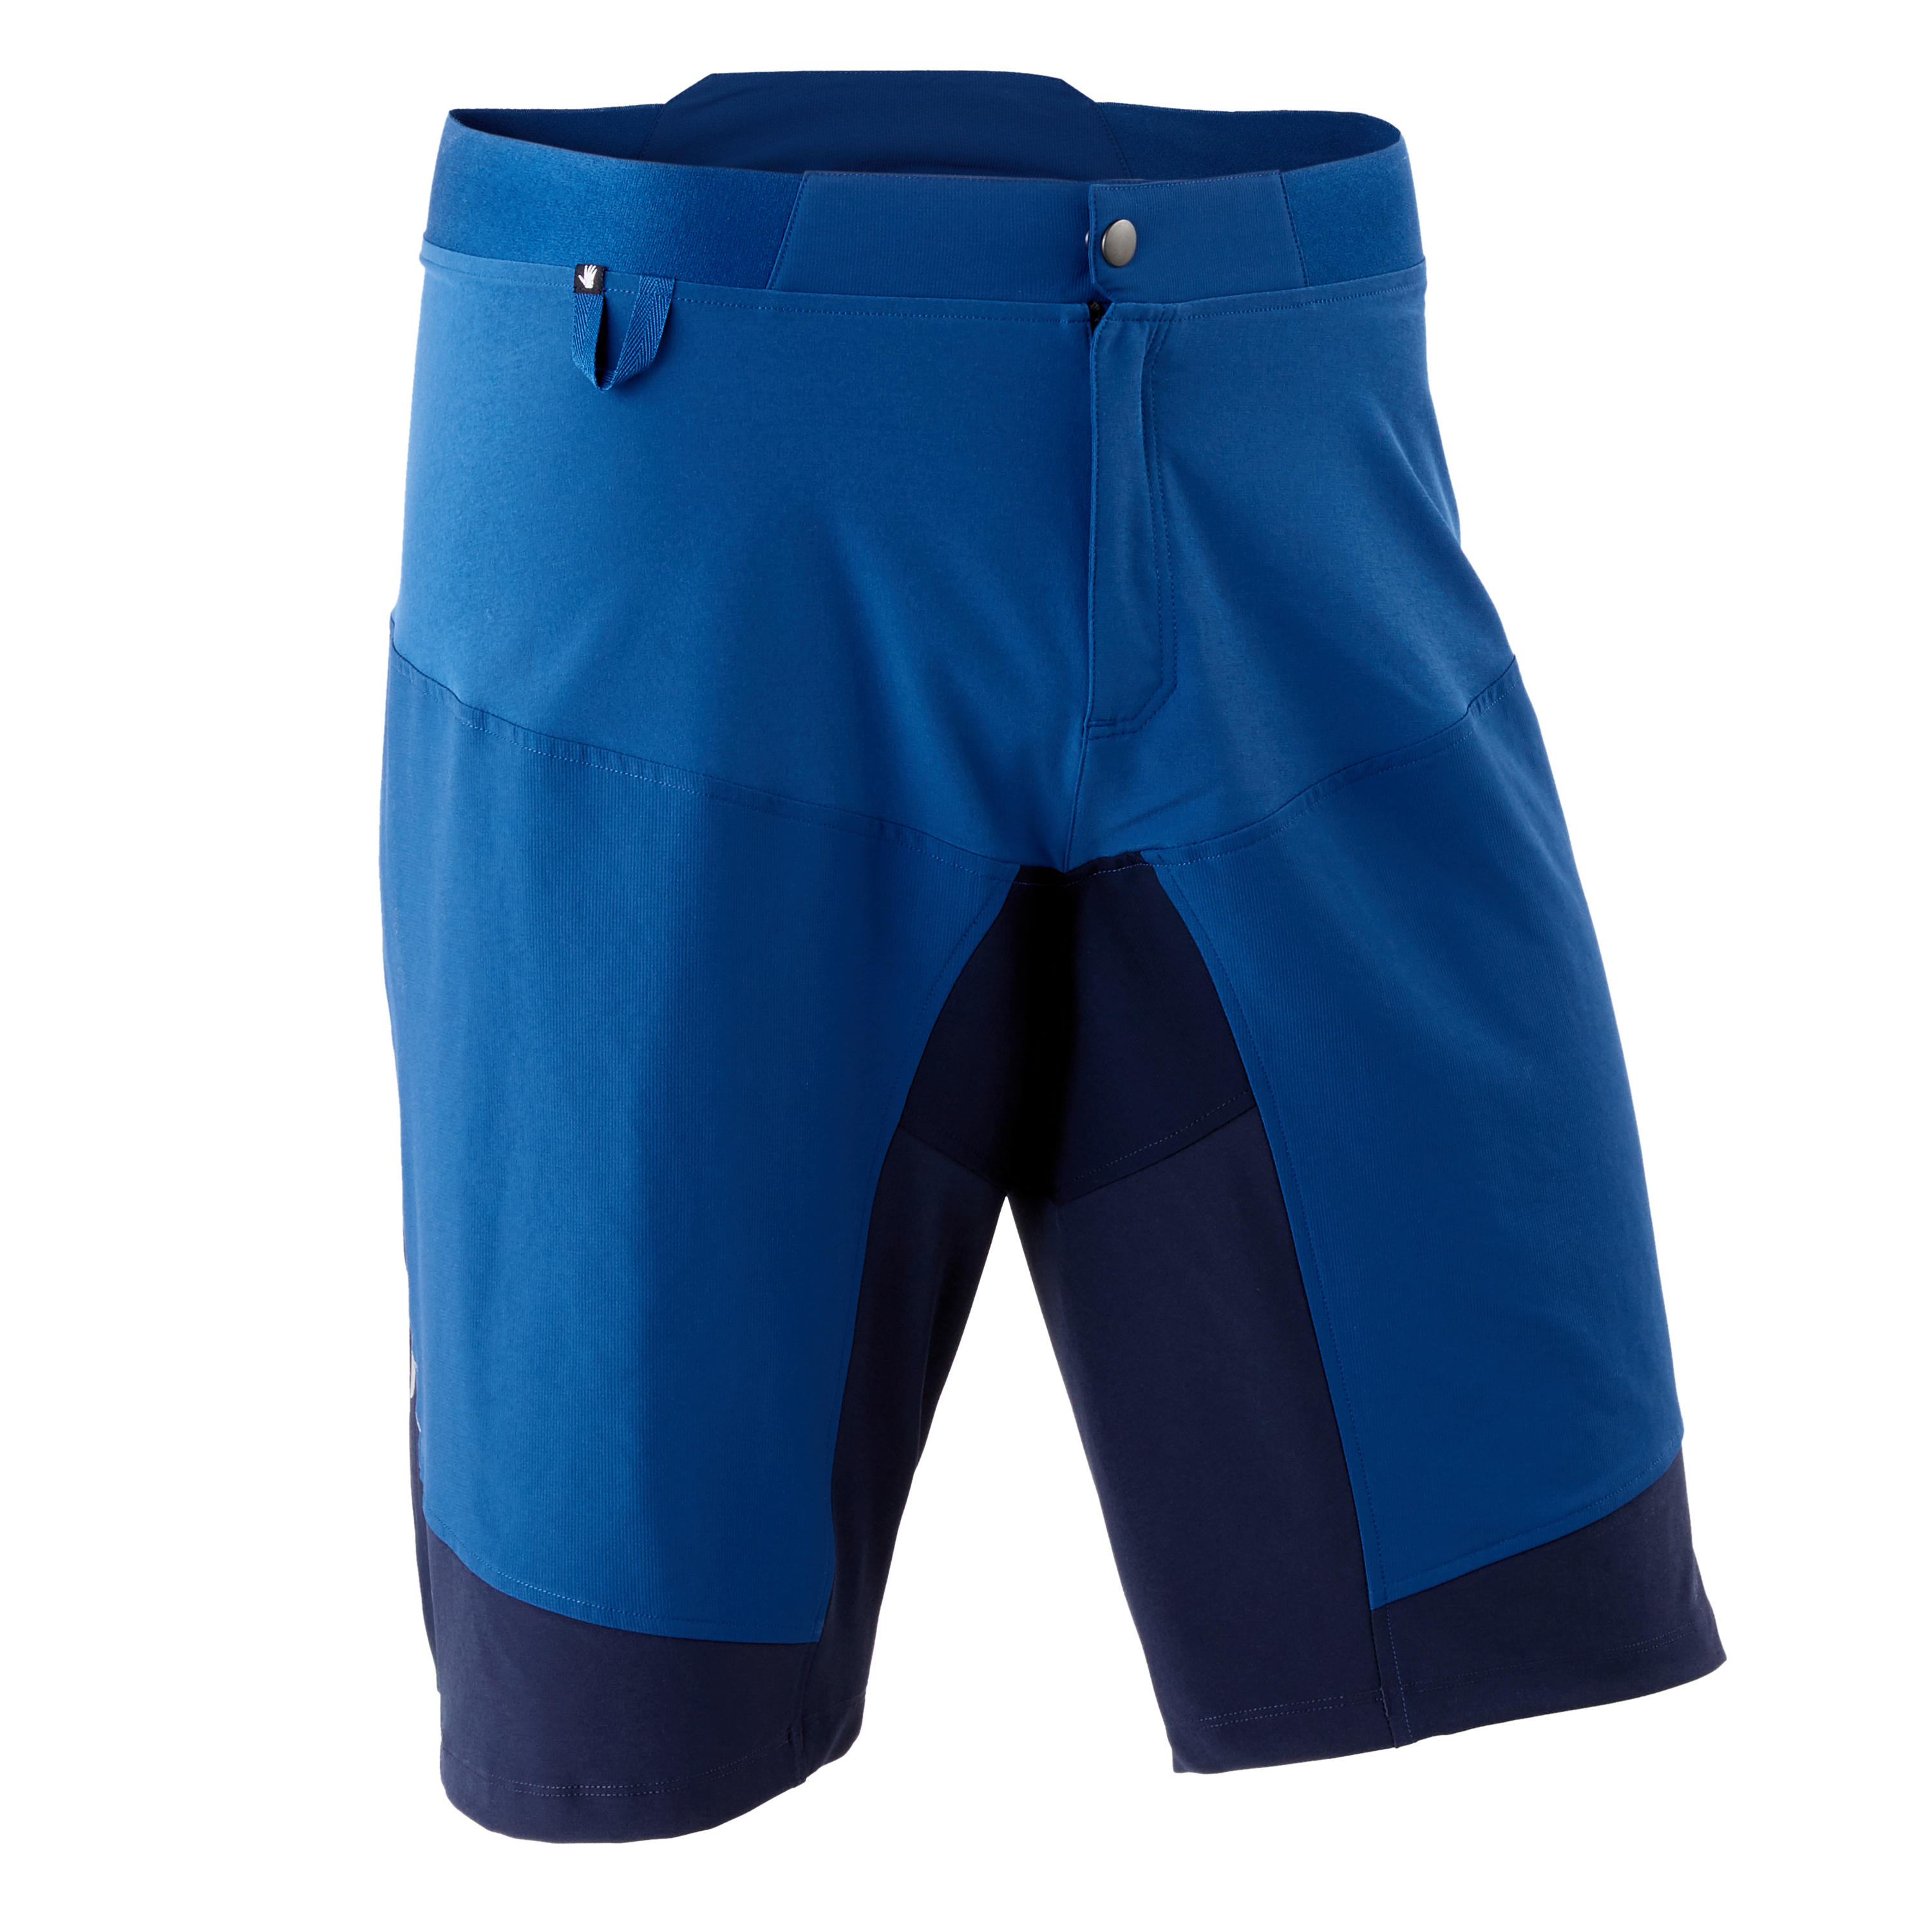 blue bike shorts